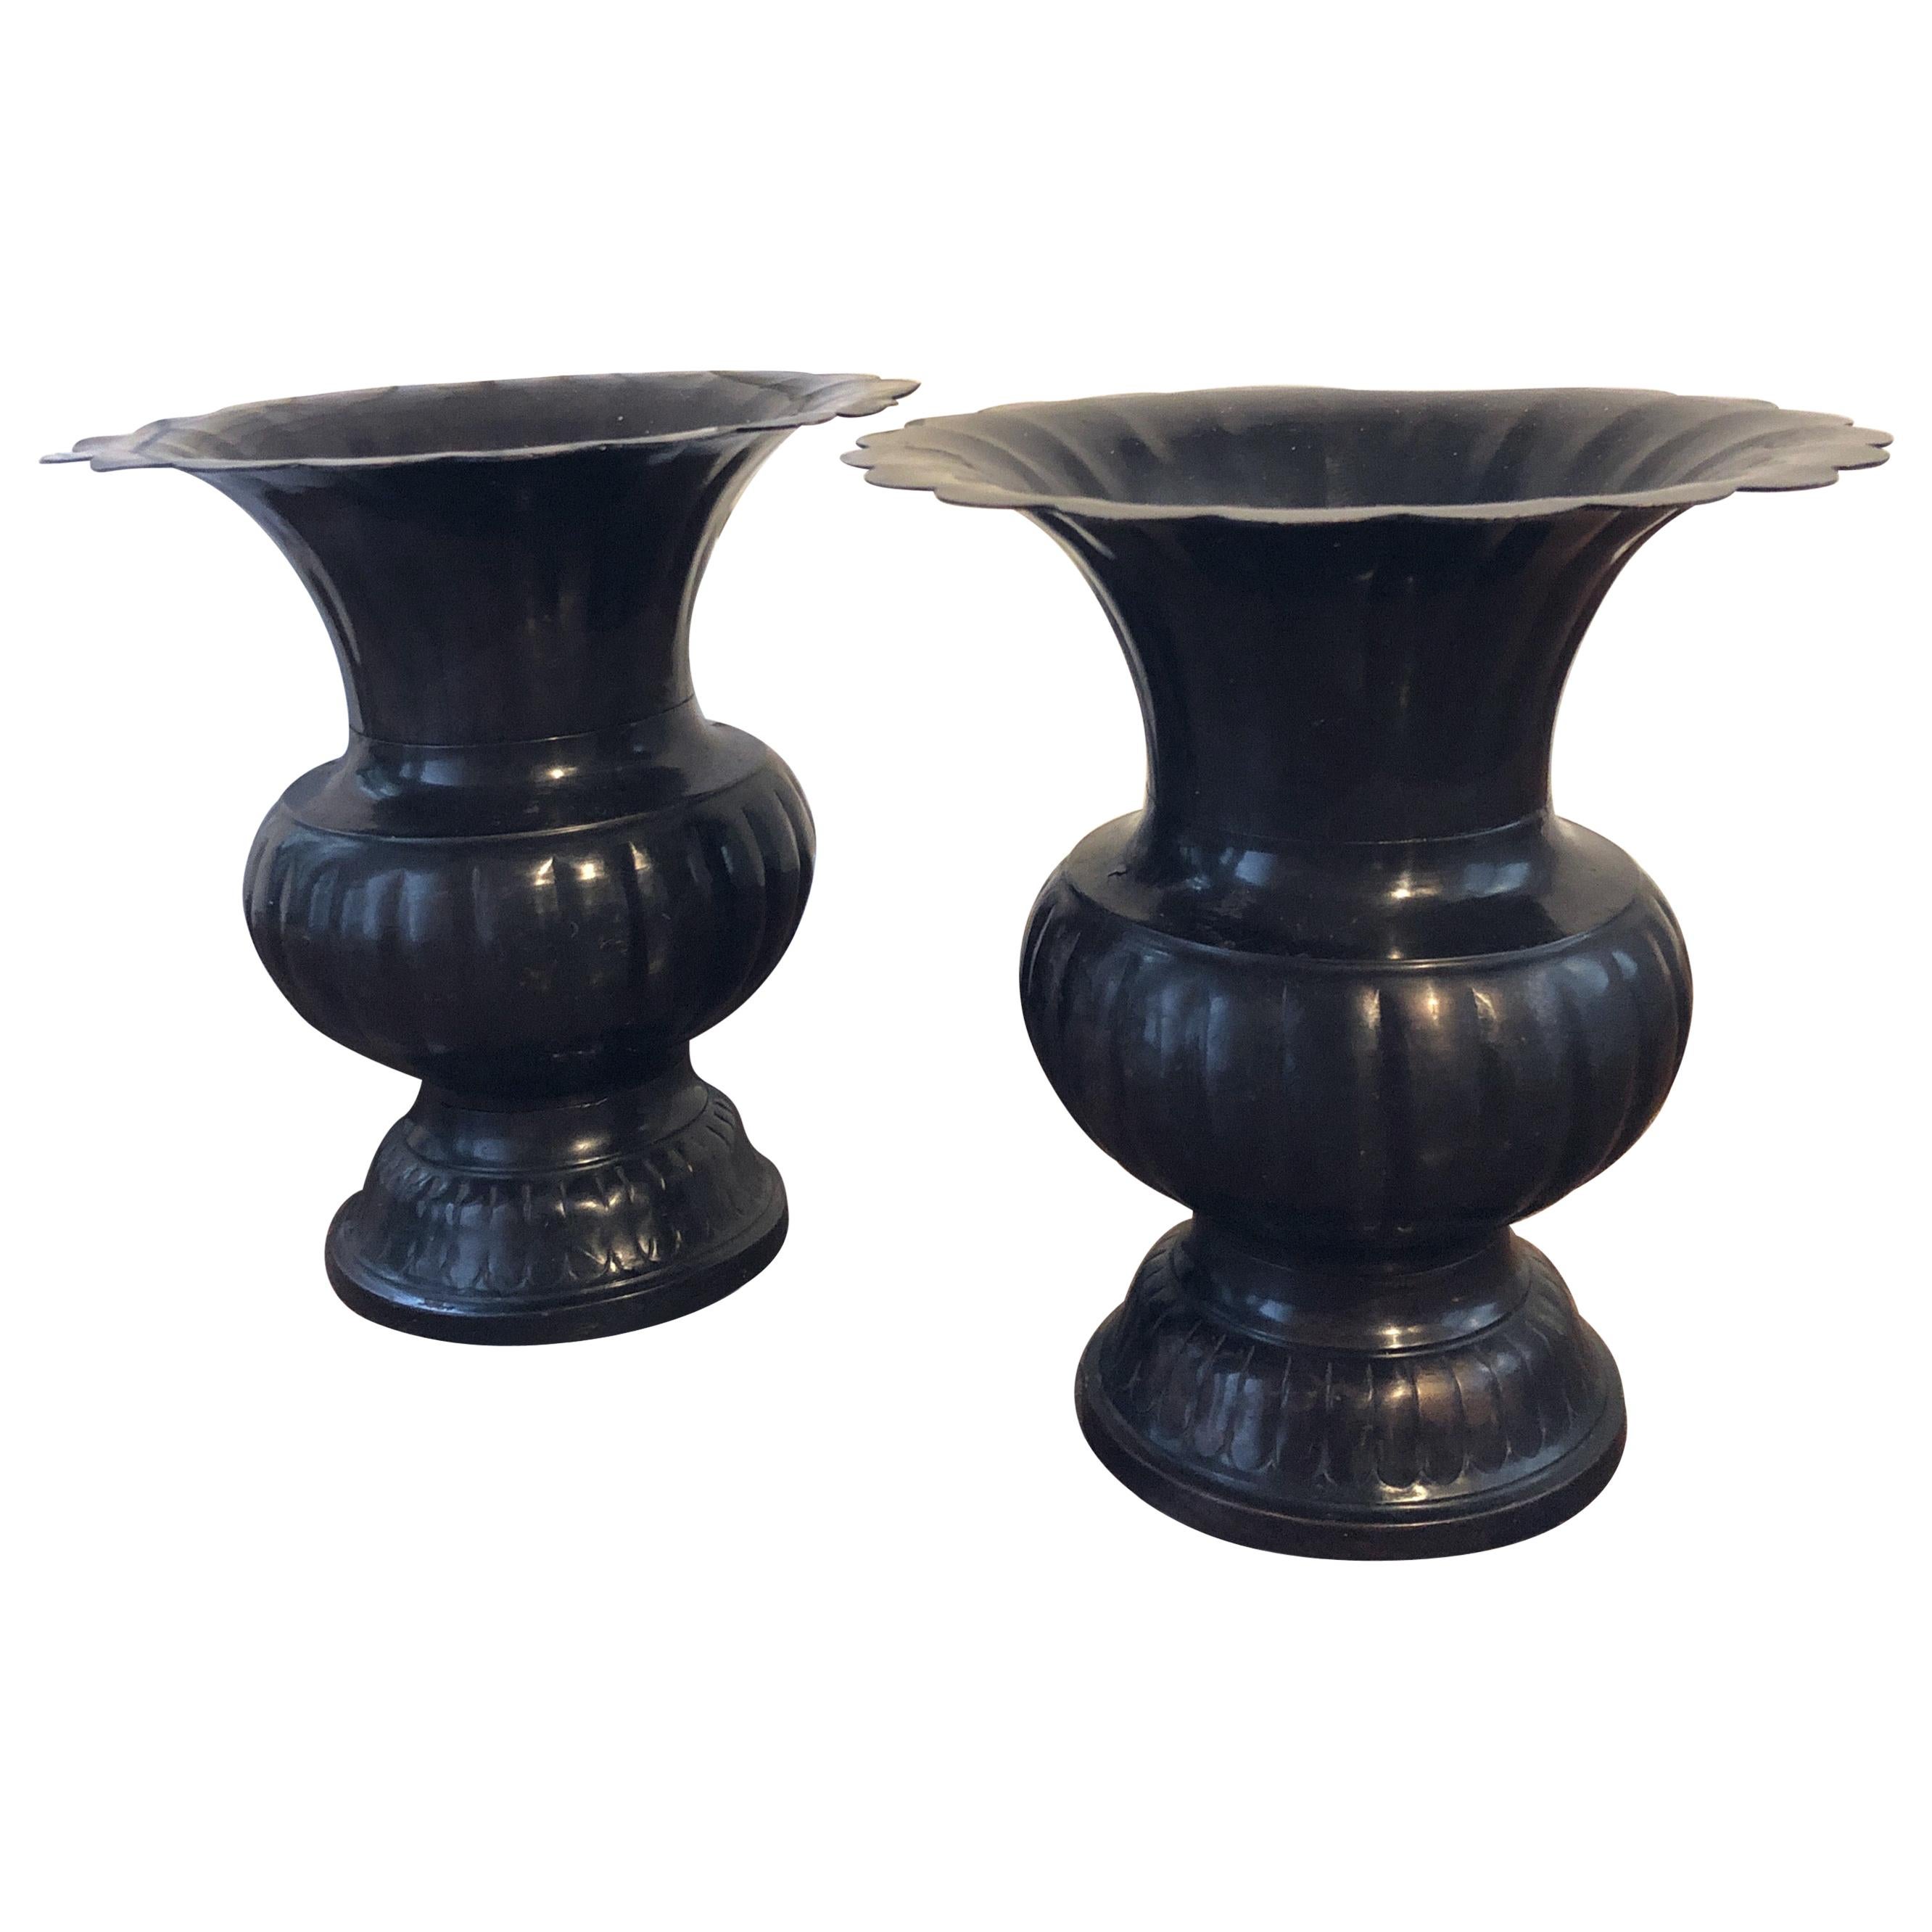 Paire de vases/récipients chinois en bronze datant de la fin du XIXe siècle et du début du XXe siècle